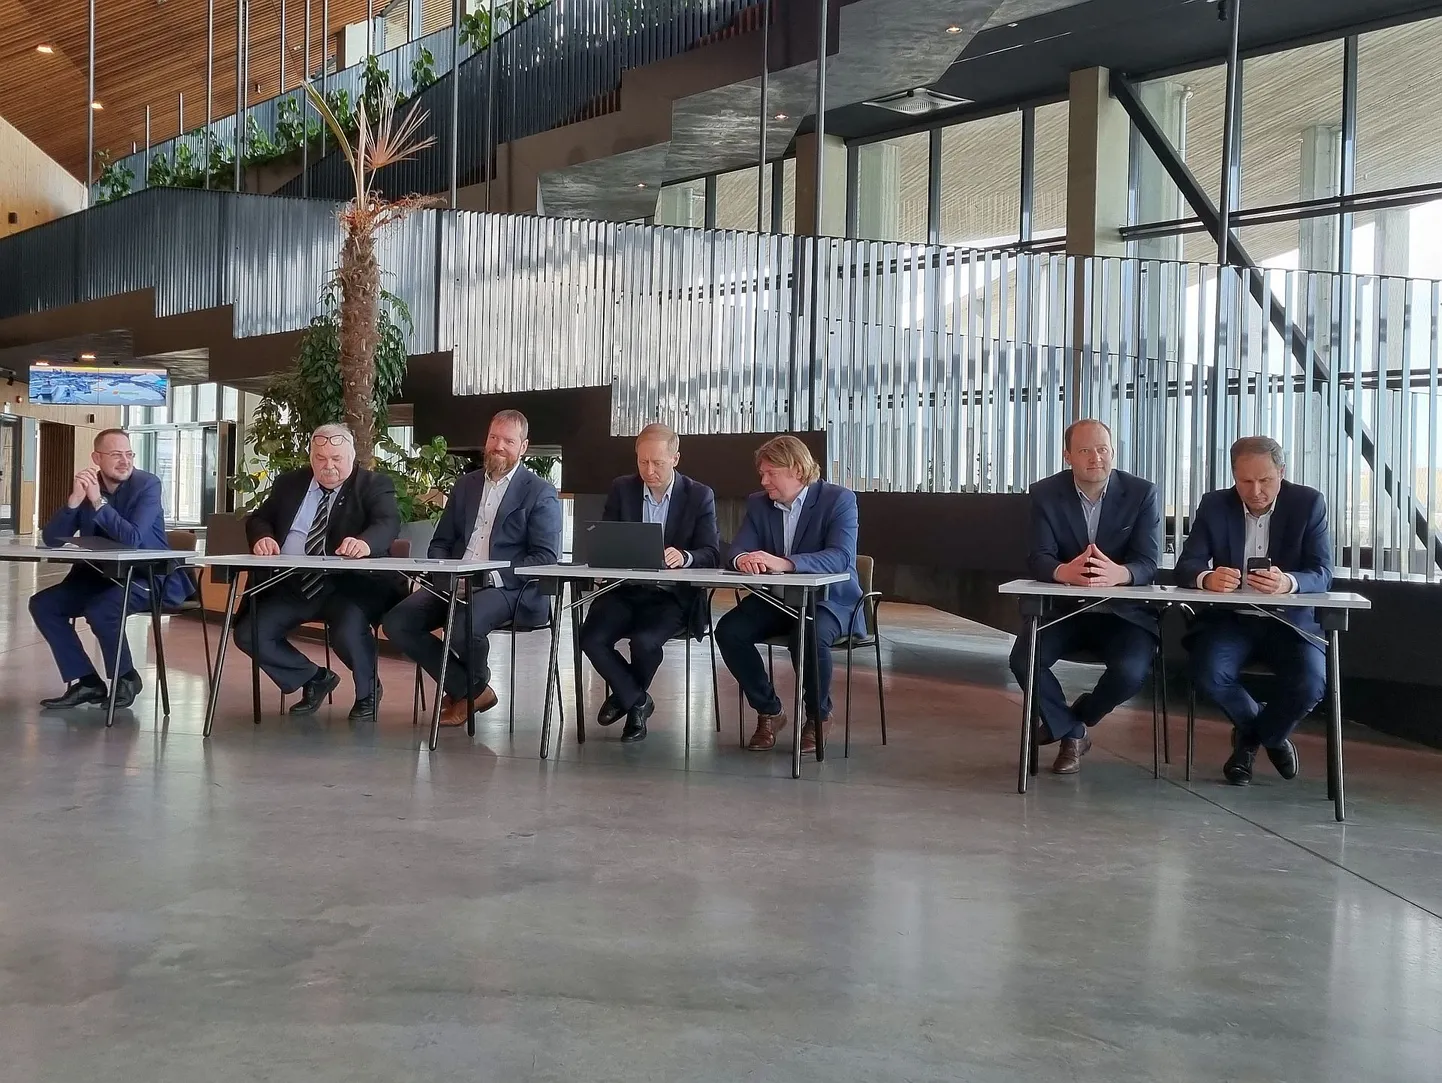 Vesinikukonsortsiumi leppe allkirjastamine Tallinna kruiisiterminalis andis alguse koostööle, millega tahetakse vesinikumajandus Eestis hooga käima lükata.